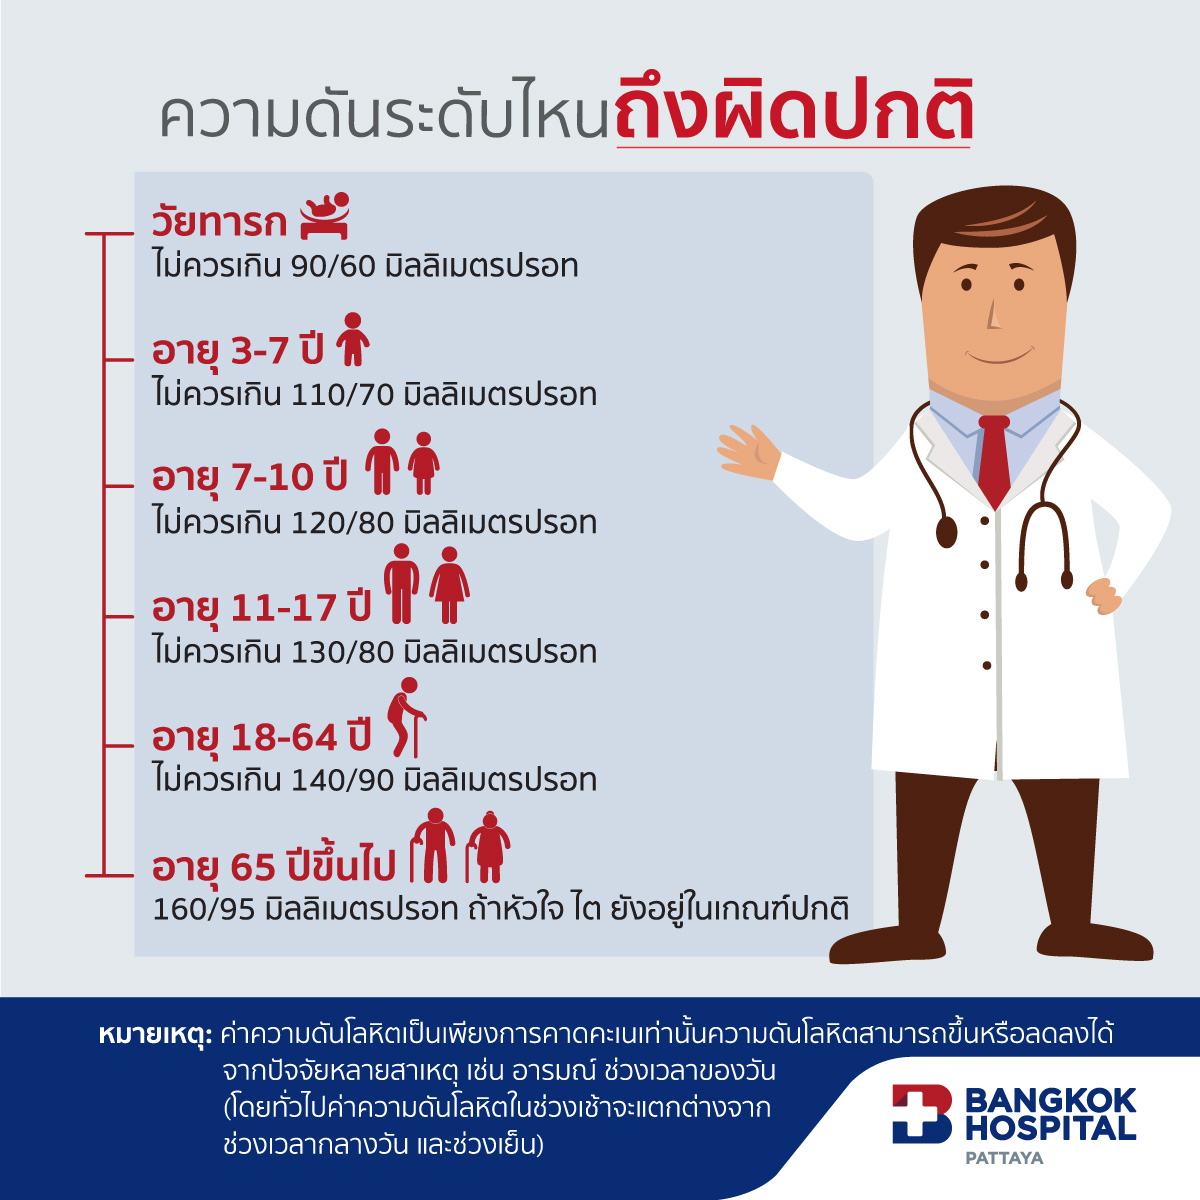 โรคความดันโลหิตสูง - Bangkok Hospital Pattaya